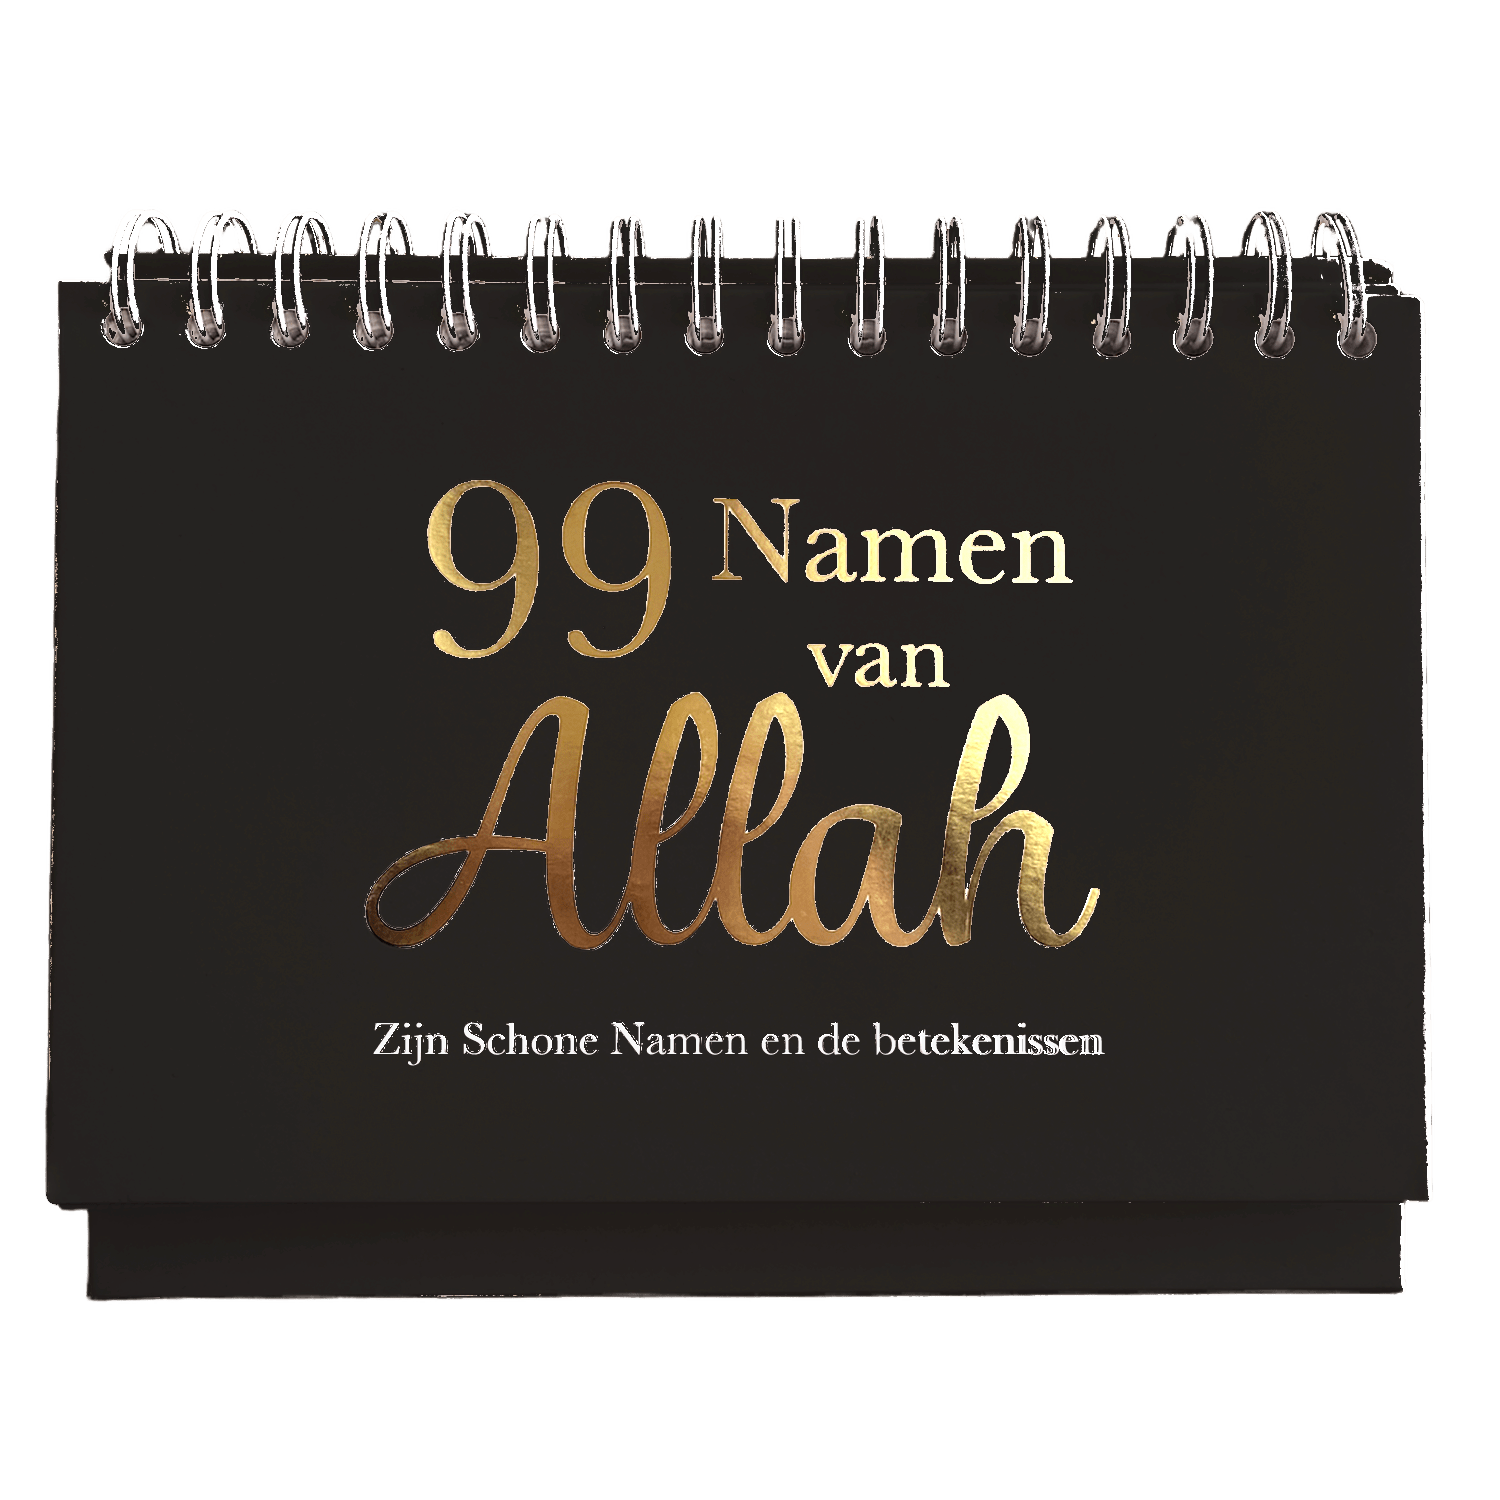 99 Namen van Allah Zwart Kalender - Zijn Schone Namen en de betekennisen